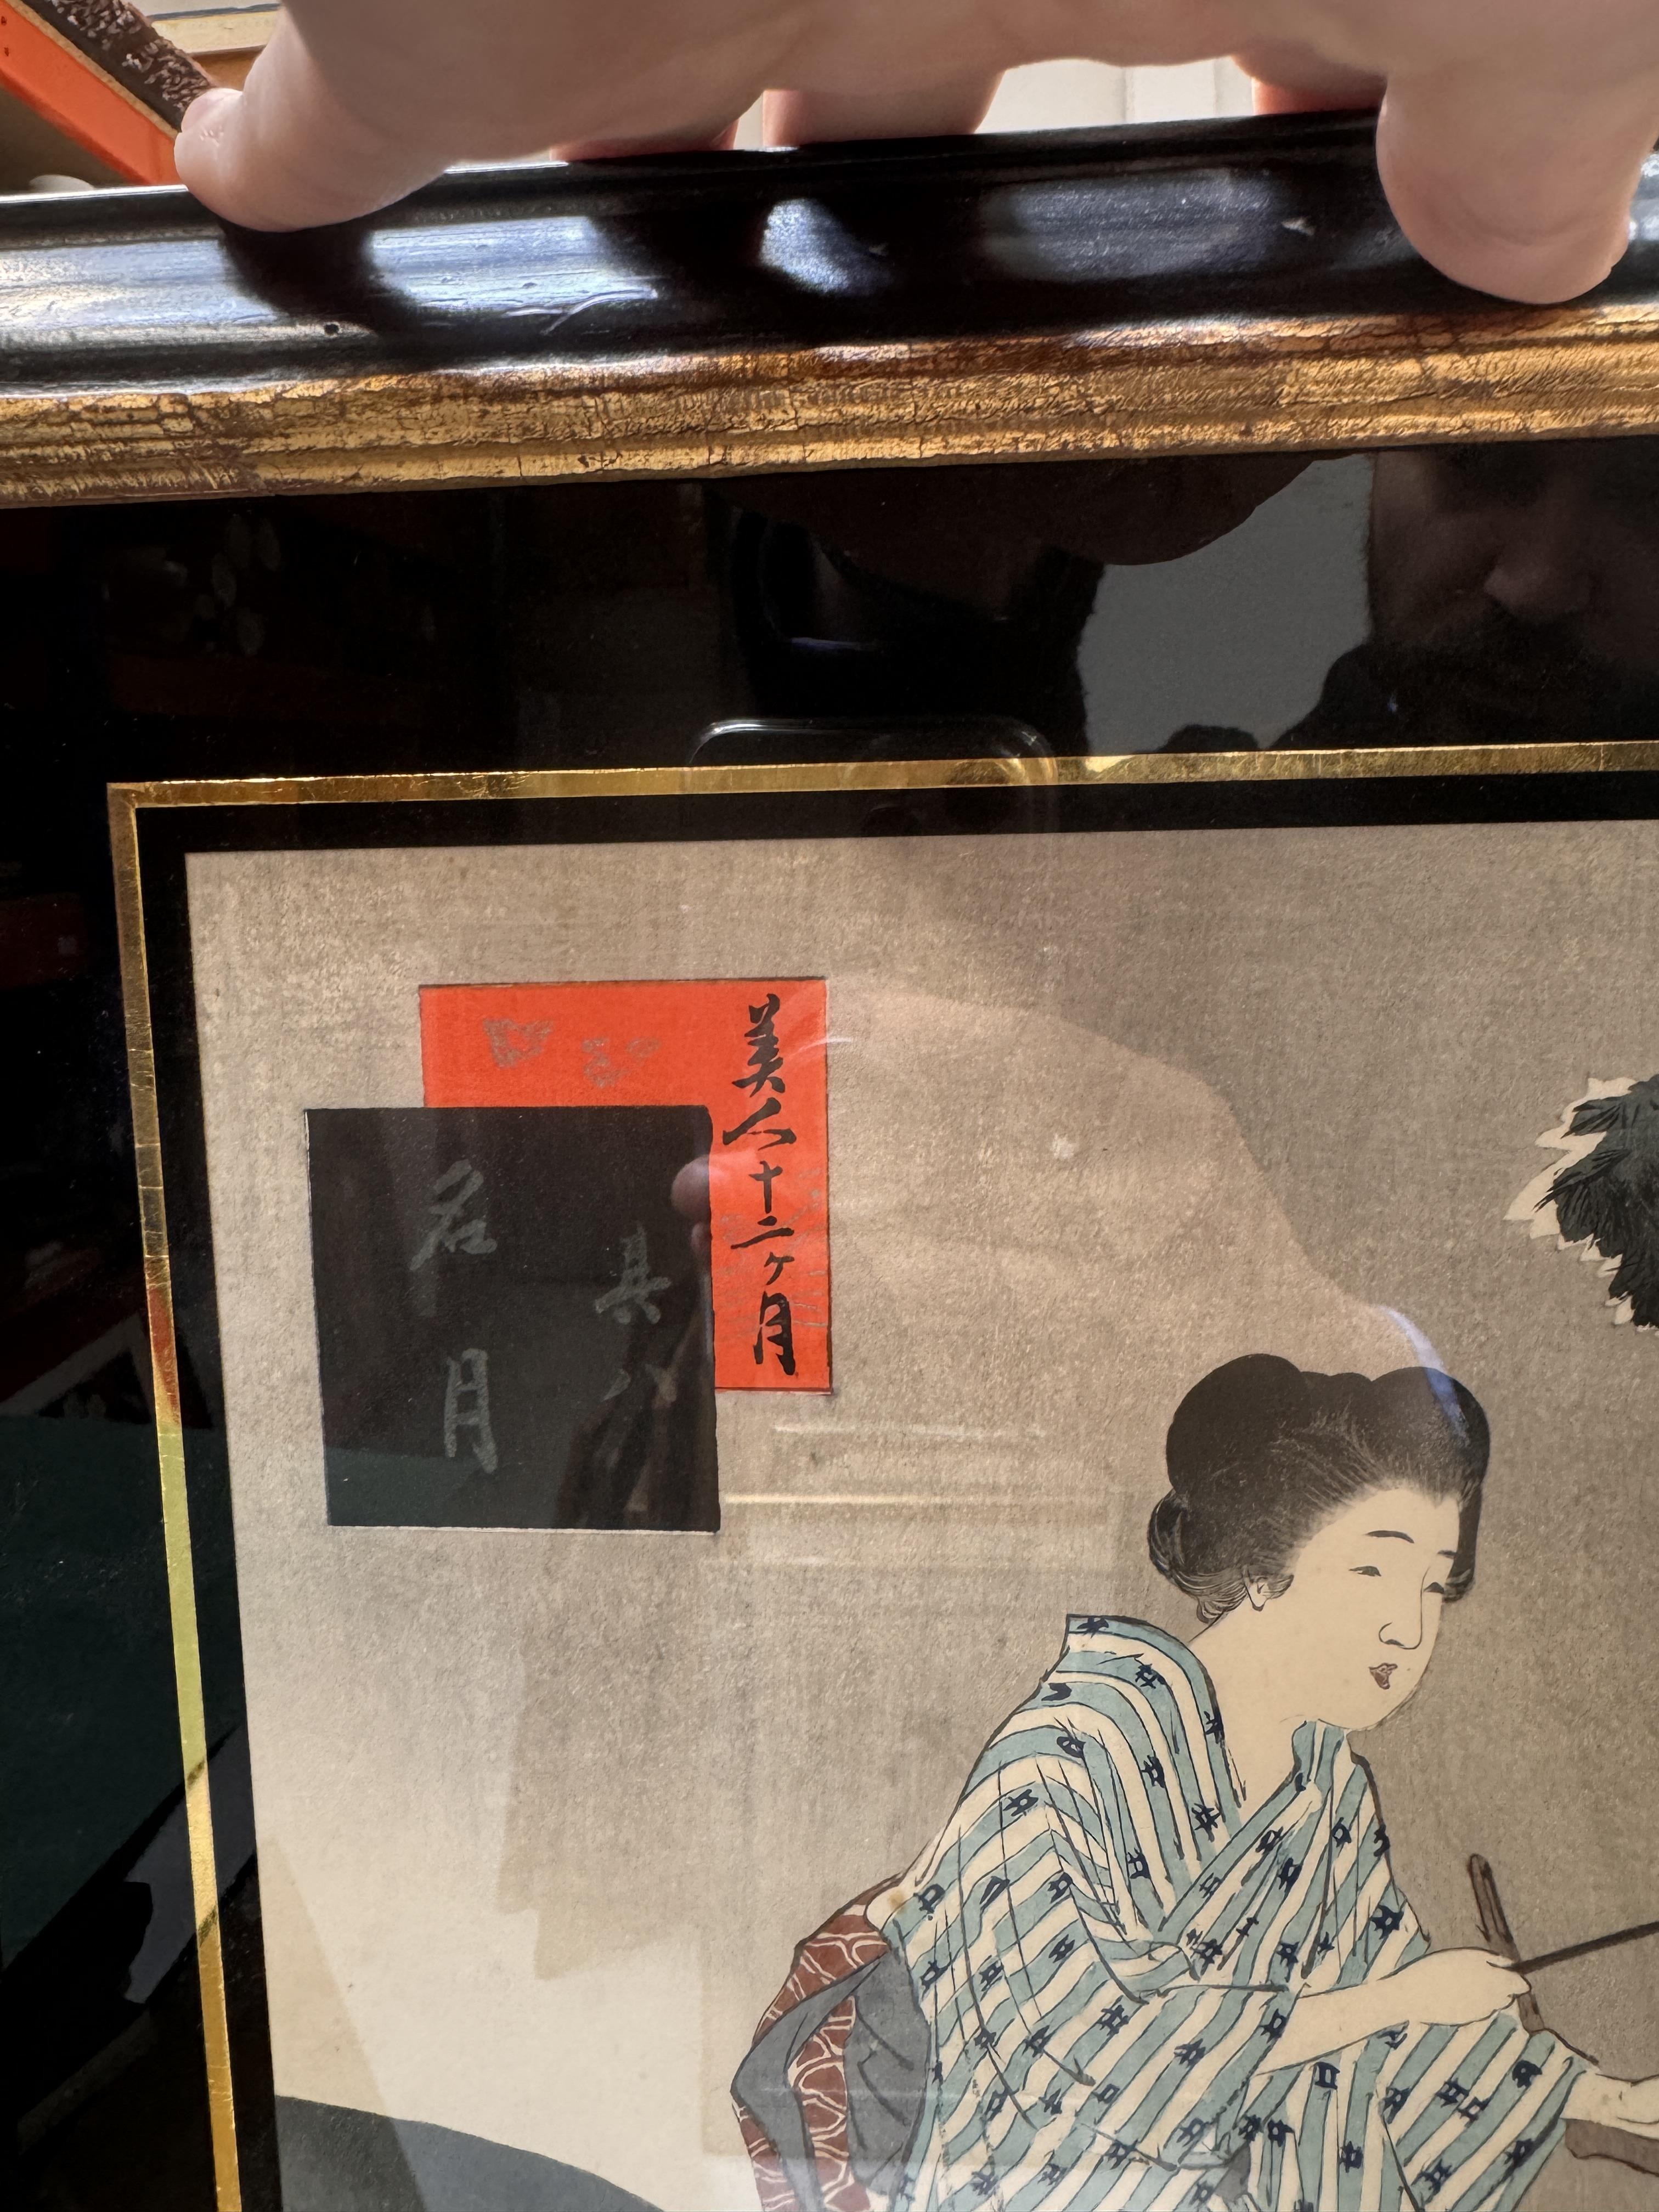 TSUKIOKA YOSHITOSHI (1797 – 1858), MIYAGAWA SHUNTEI (1873 – 1914) Two Japanese woodblock print tript - Image 21 of 23